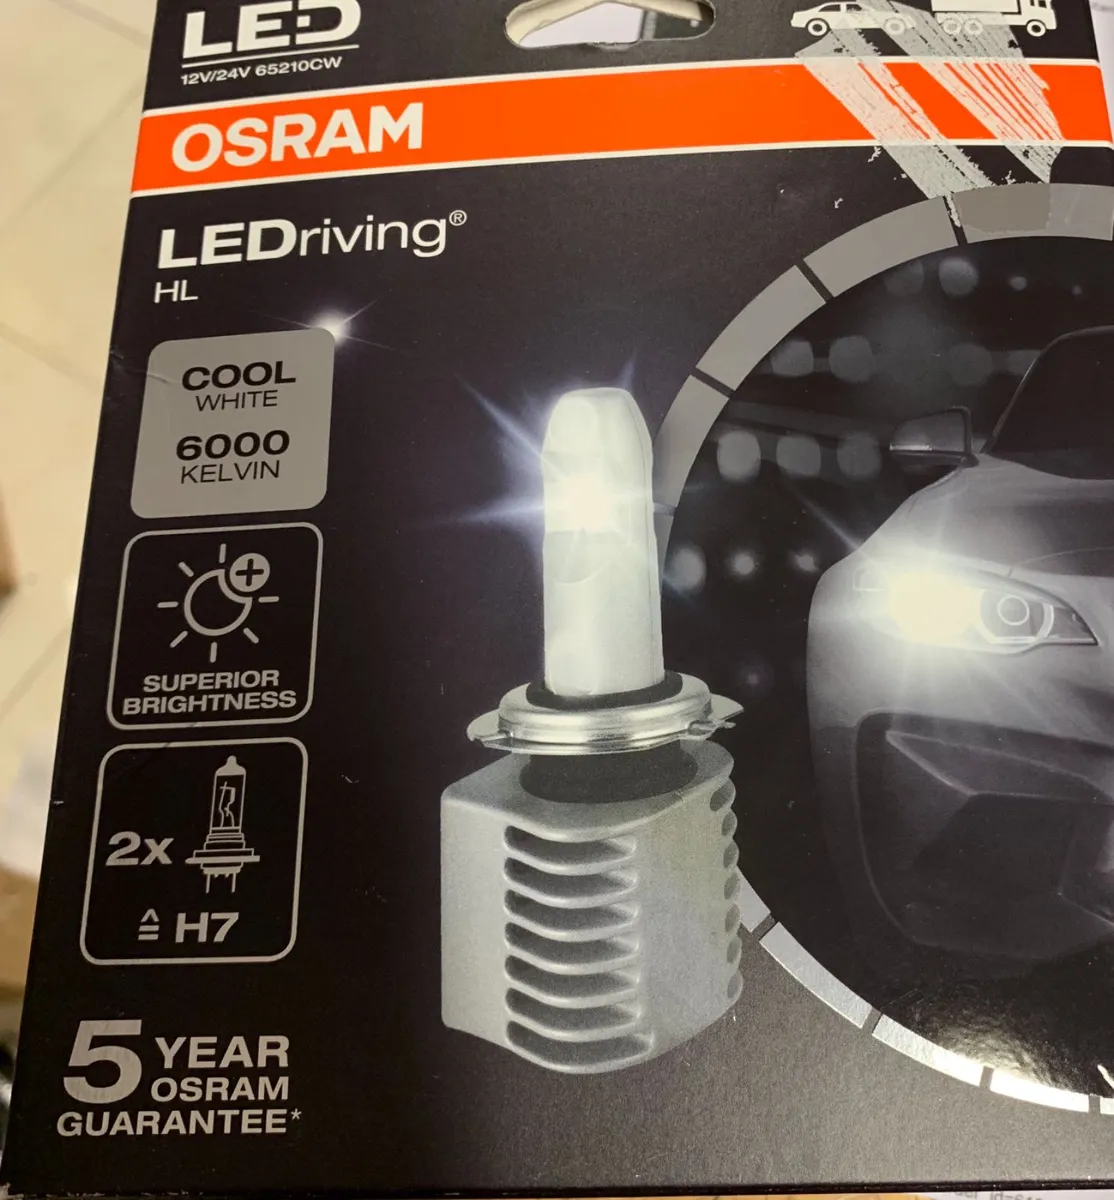 Osram led lighting at fk online shop